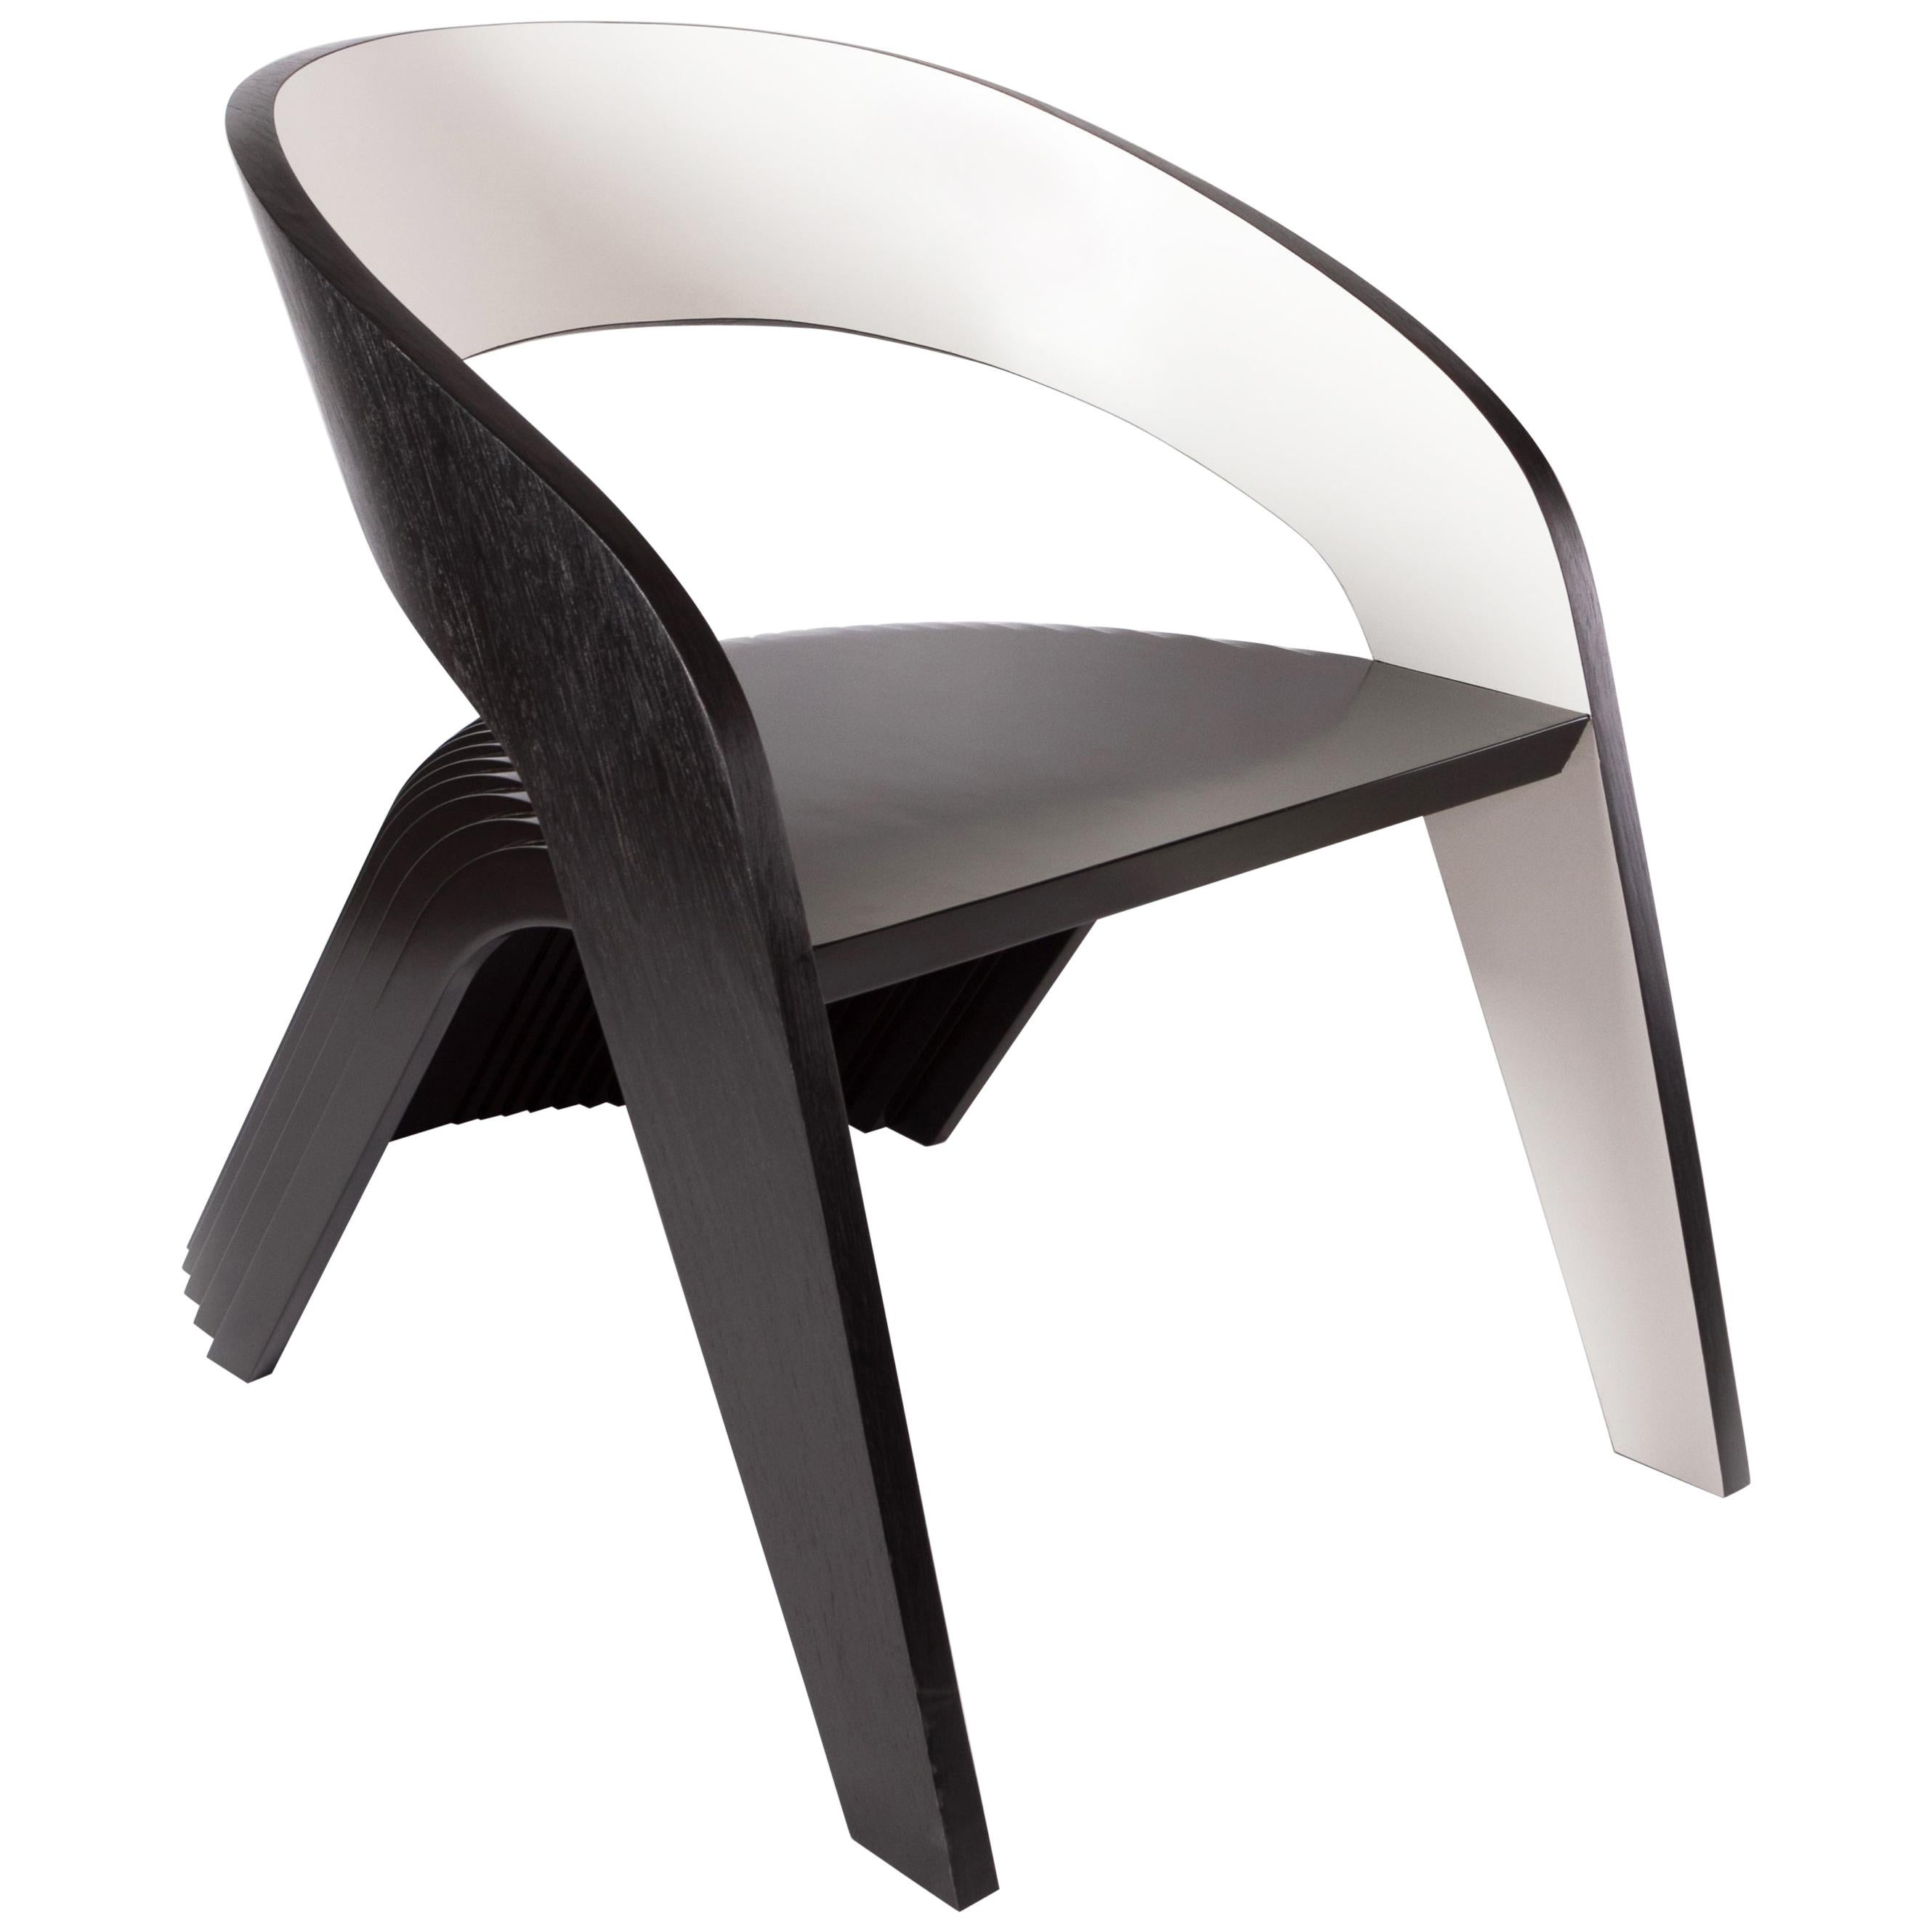 "Delta" chair by Aciole Felix, Brazilian Contemporary Design